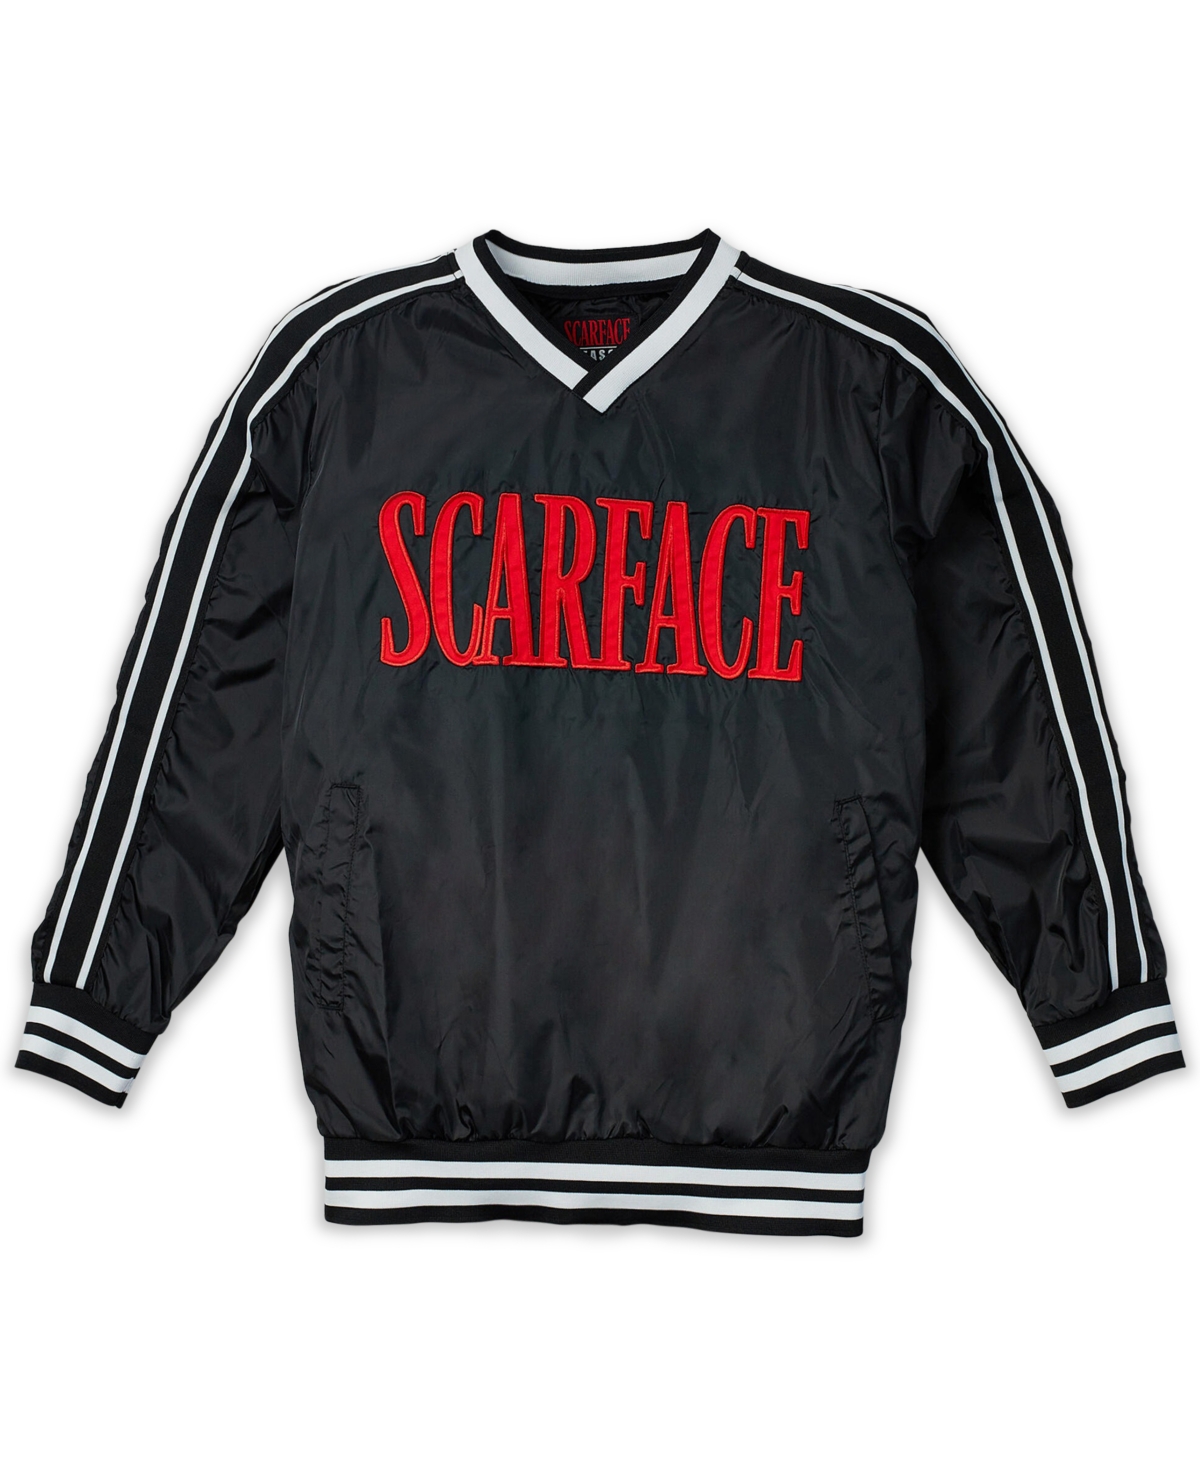 Men's Scarface Pullover Windbreaker Sweatshirt - Black